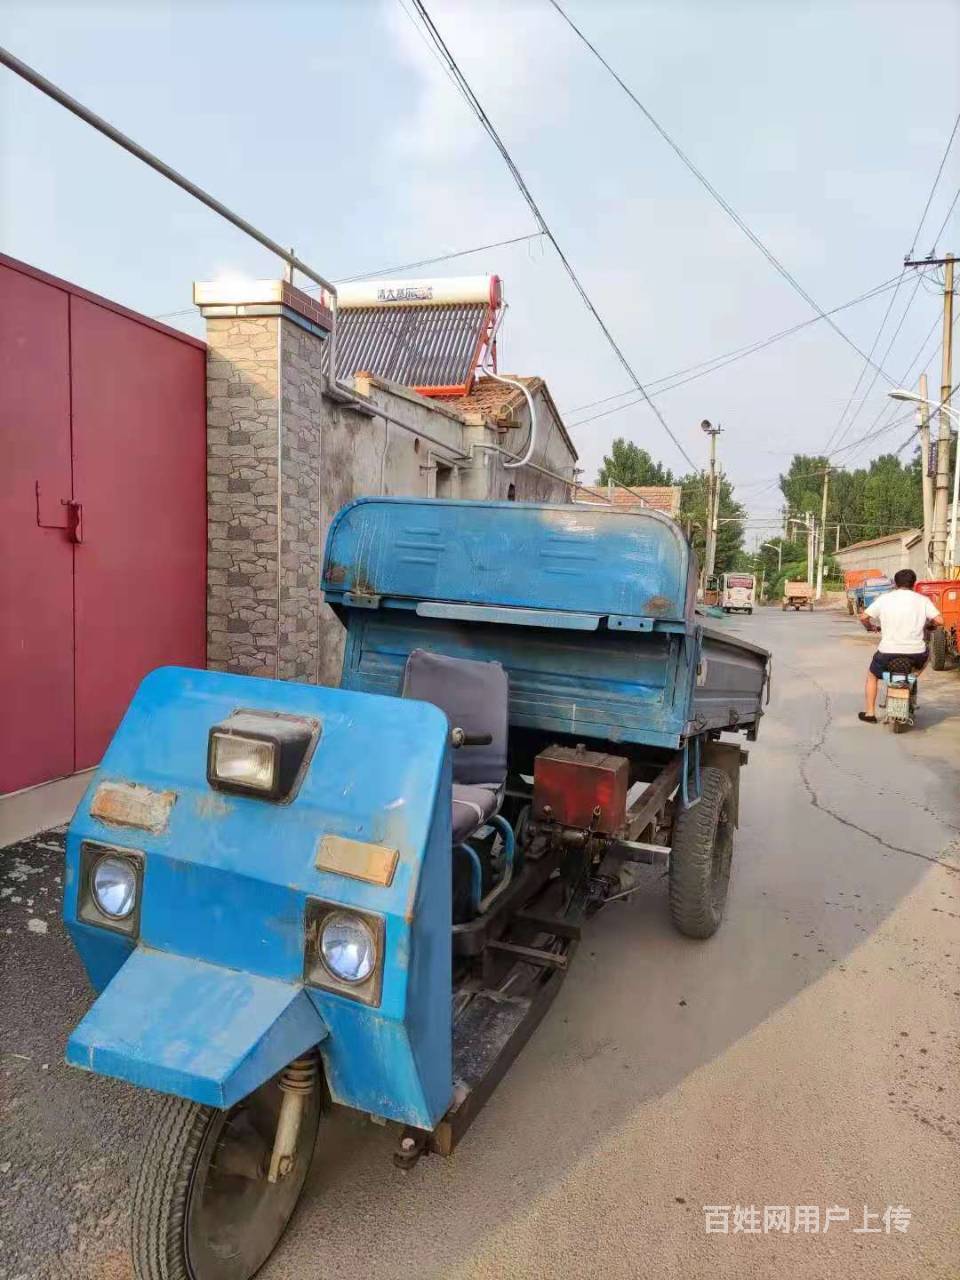 天津出售农用三轮车,三马车,农用小自卸